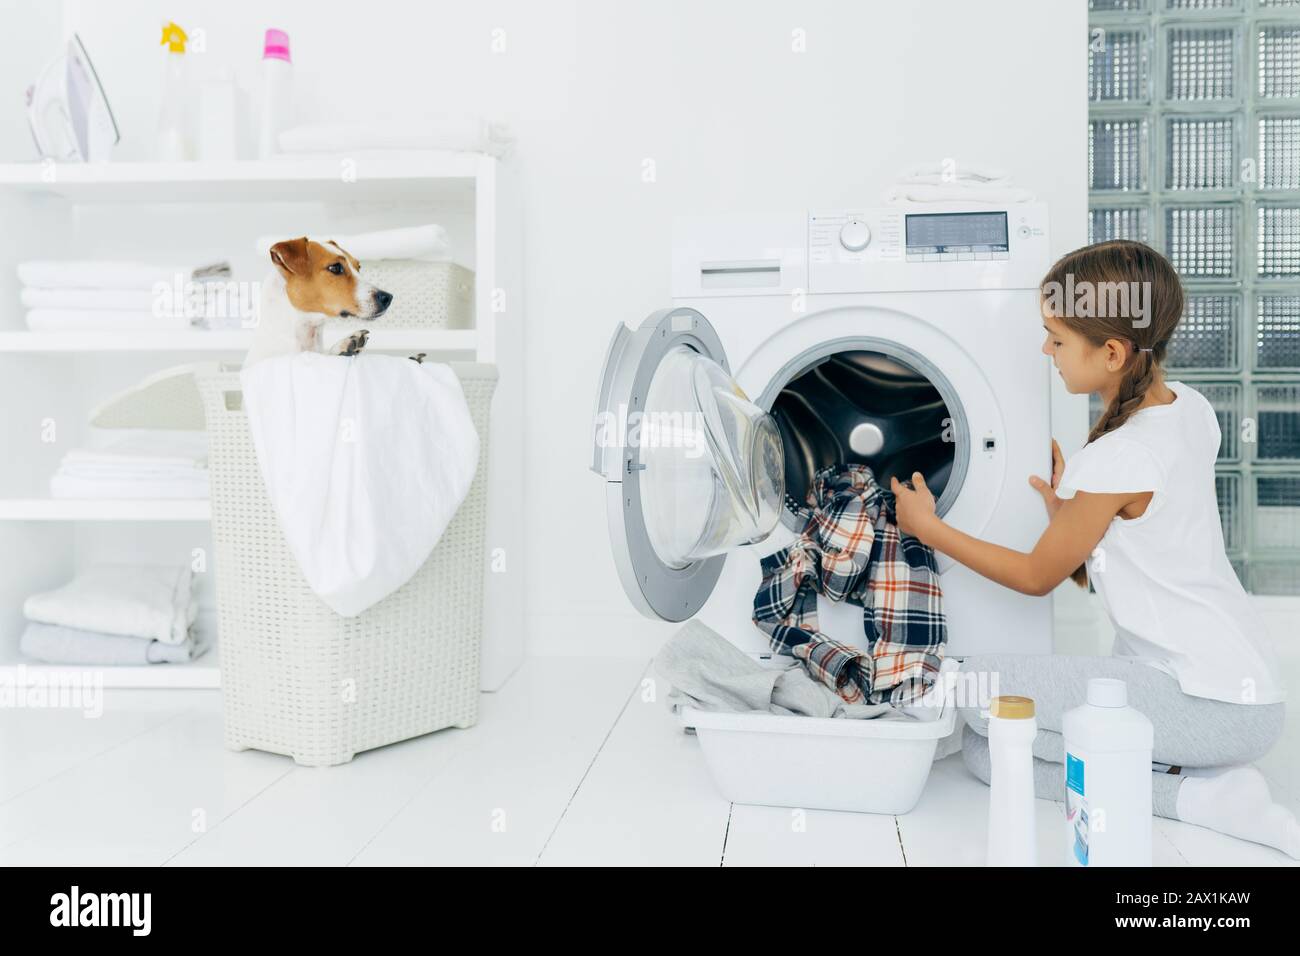 L'enfant occupé fait le travail de blanchisserie, vide la machine à laver, les vêtements nettoyés dans le bassin utilise des détergents, petit chien pedigree dans le panier. Moderne ménage dévic Banque D'Images